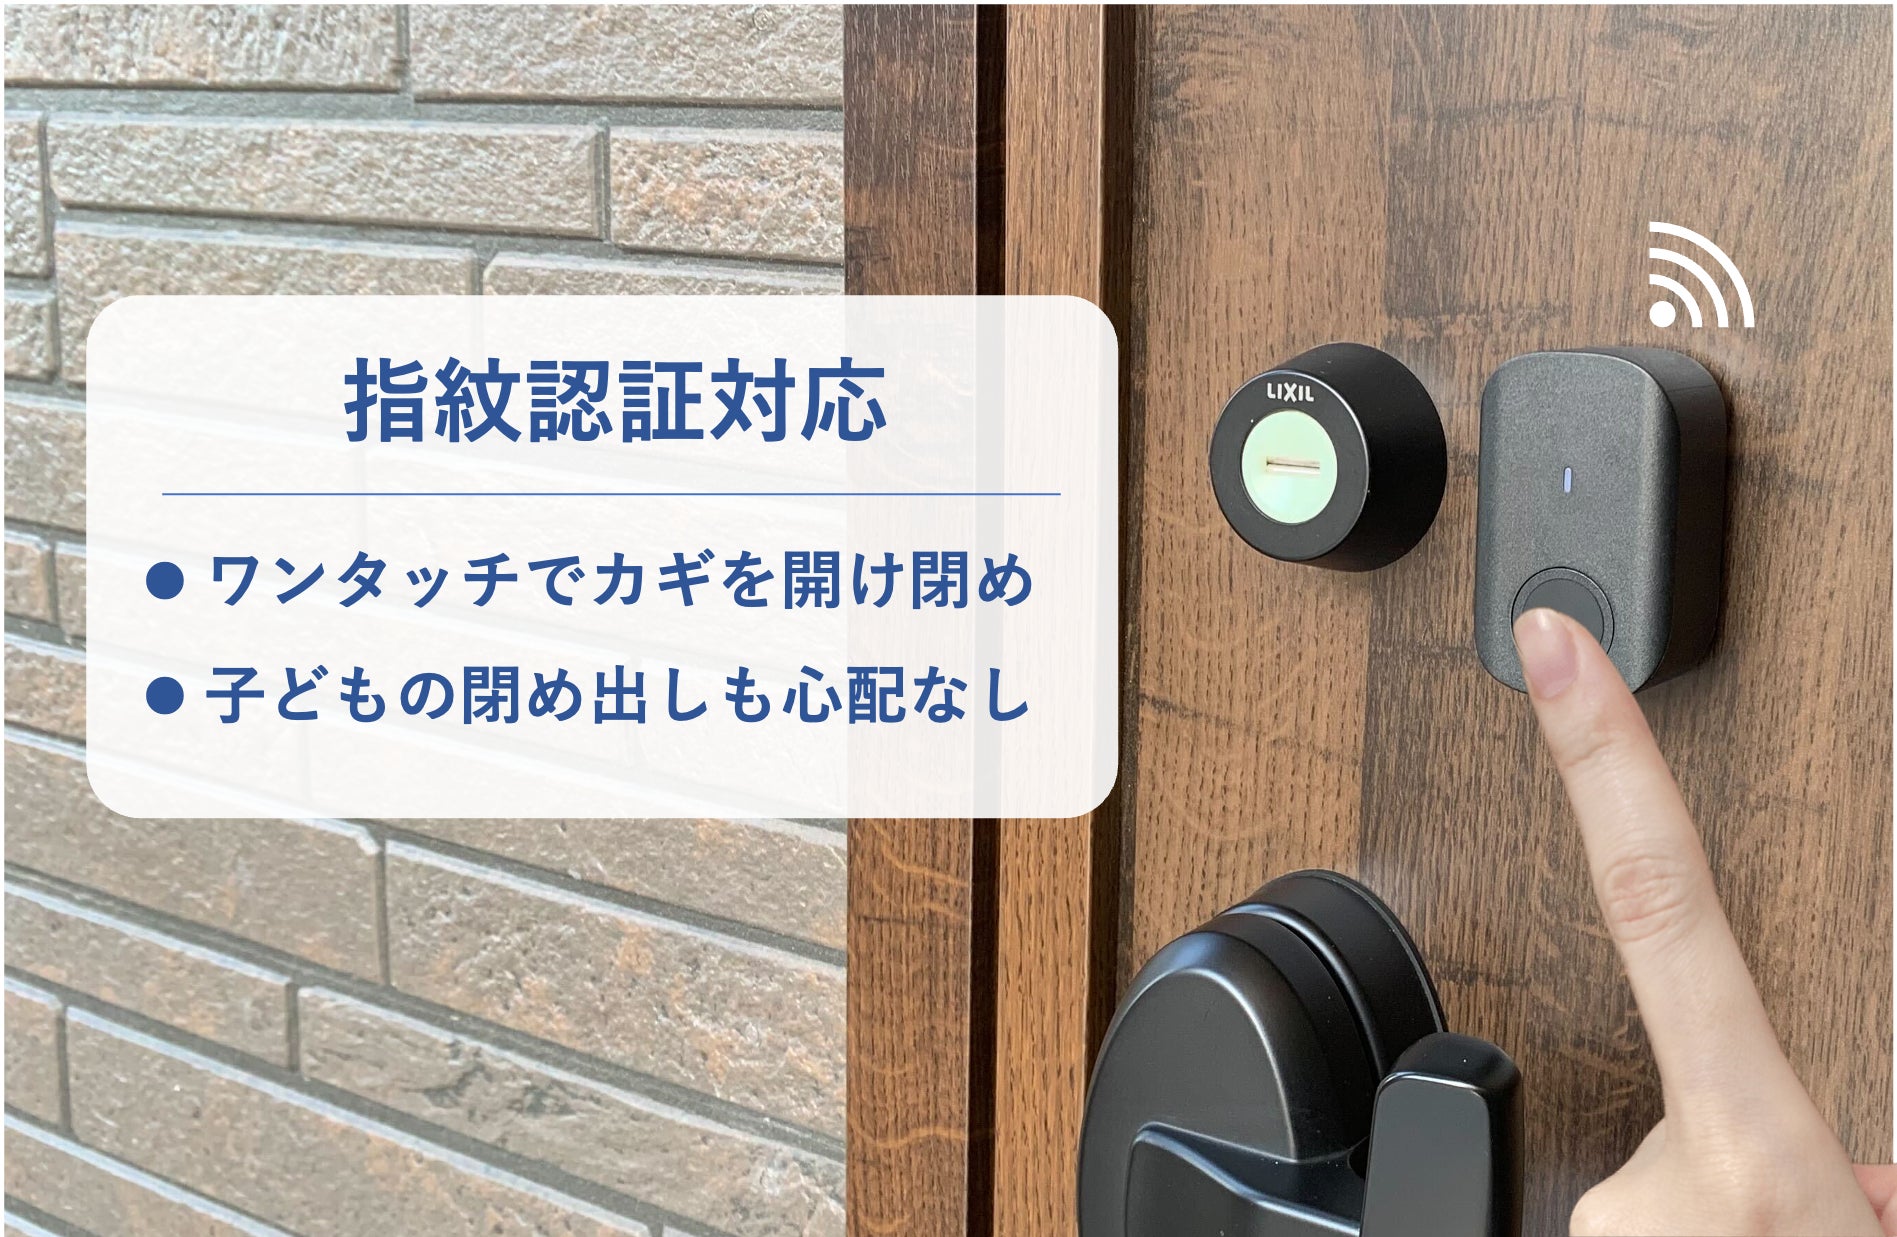 LiveSmart、飯田グループホールディングスの戸建賃貸事業の住宅に全戸標準採用のサブ画像2